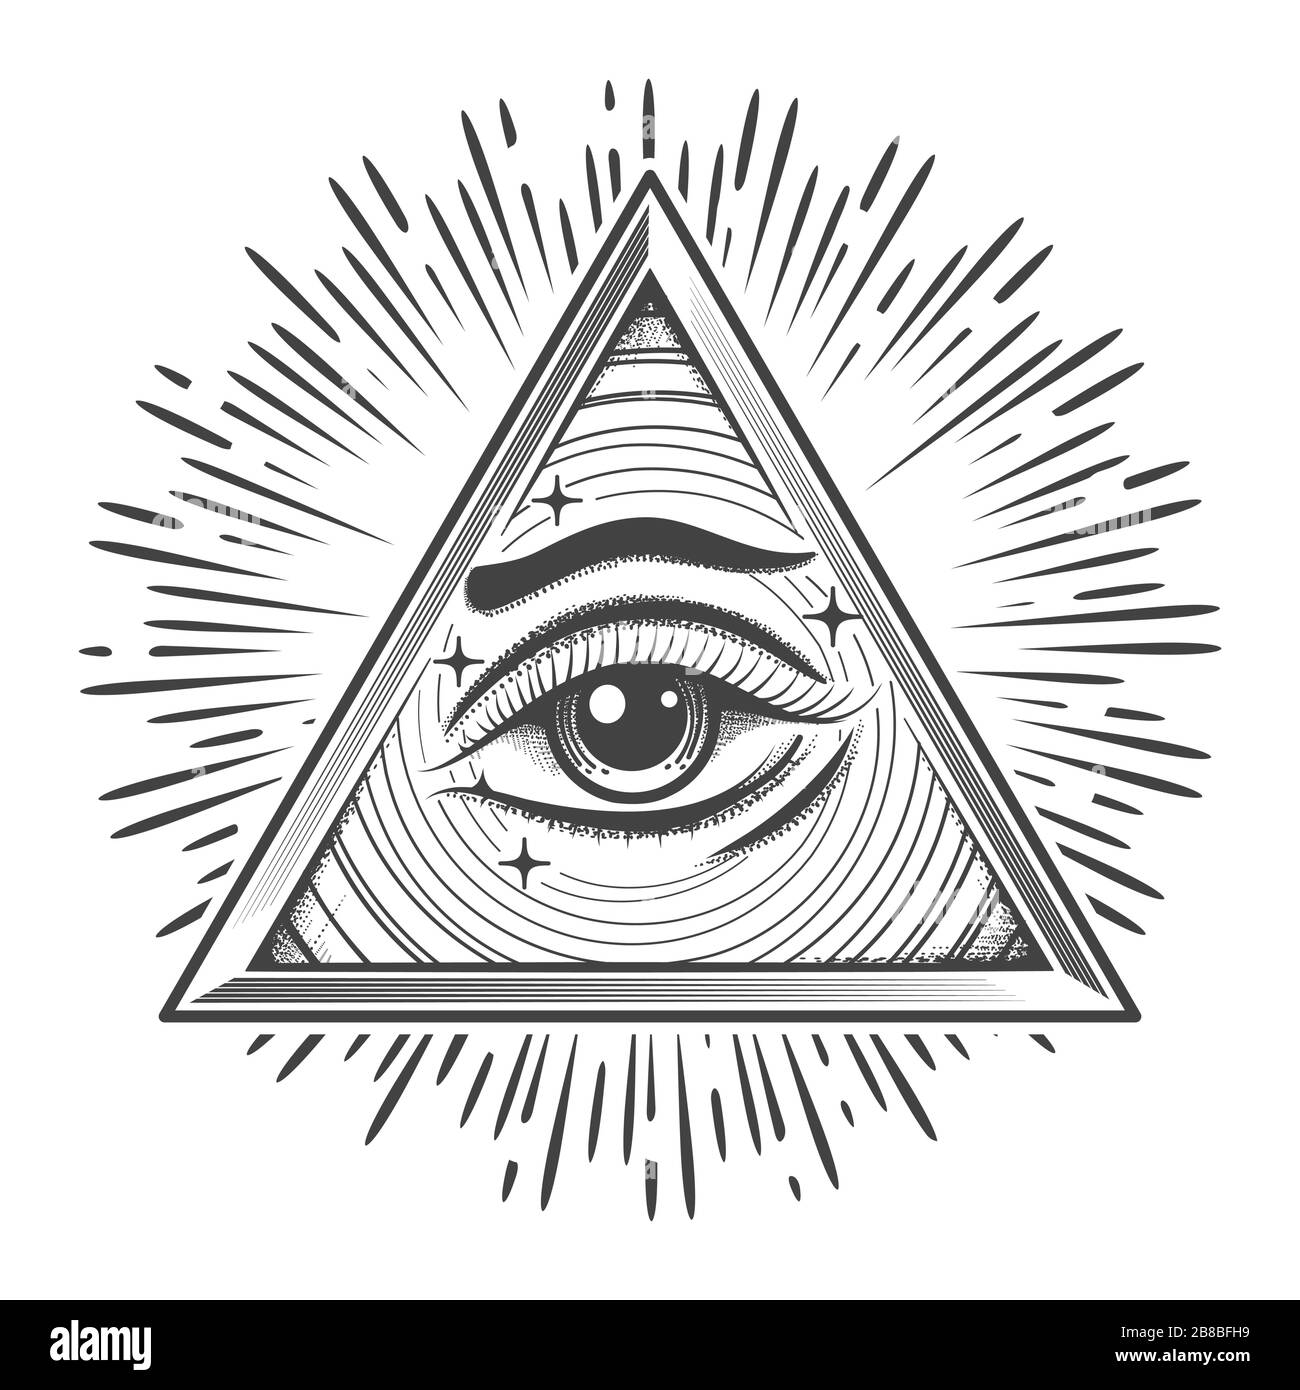 Alle, die im Dreieck Auge sehen. Freimaurerisches okkultes Symbol im Gravurstil. Vektorgrafiken Stock Vektor